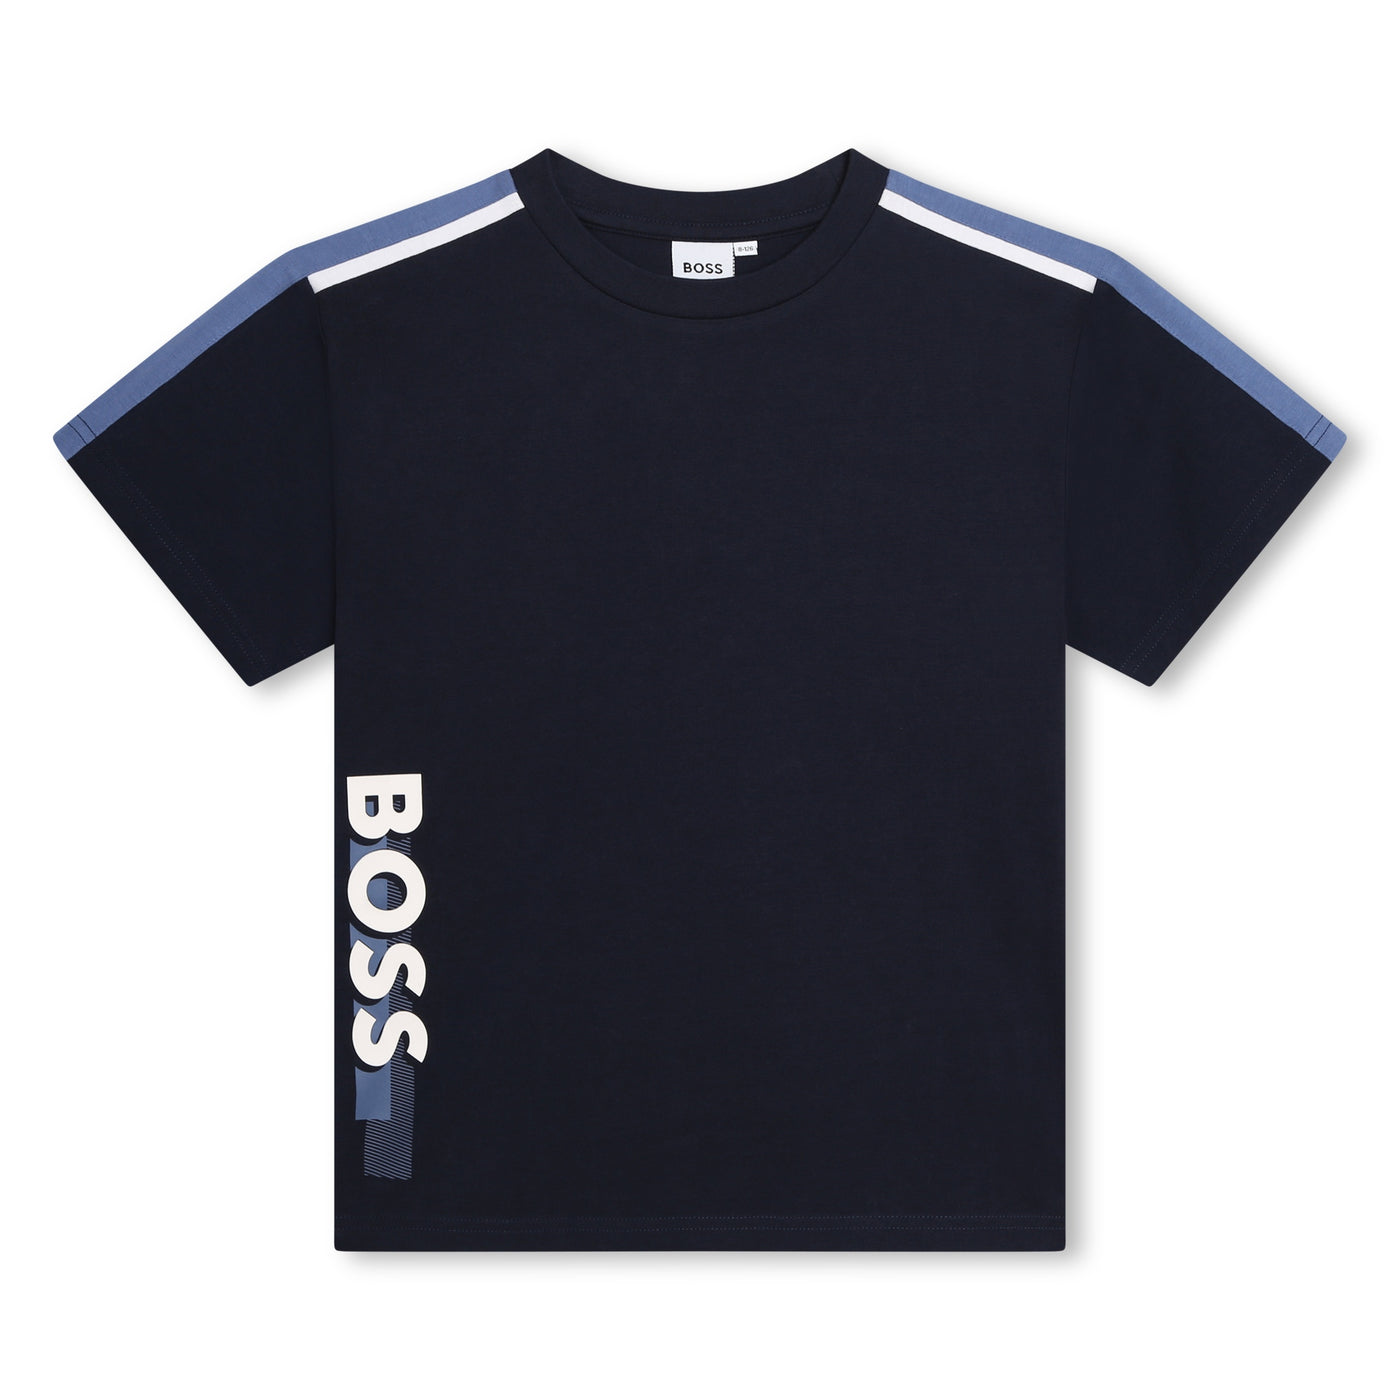 Navy T-shirt by BOSS